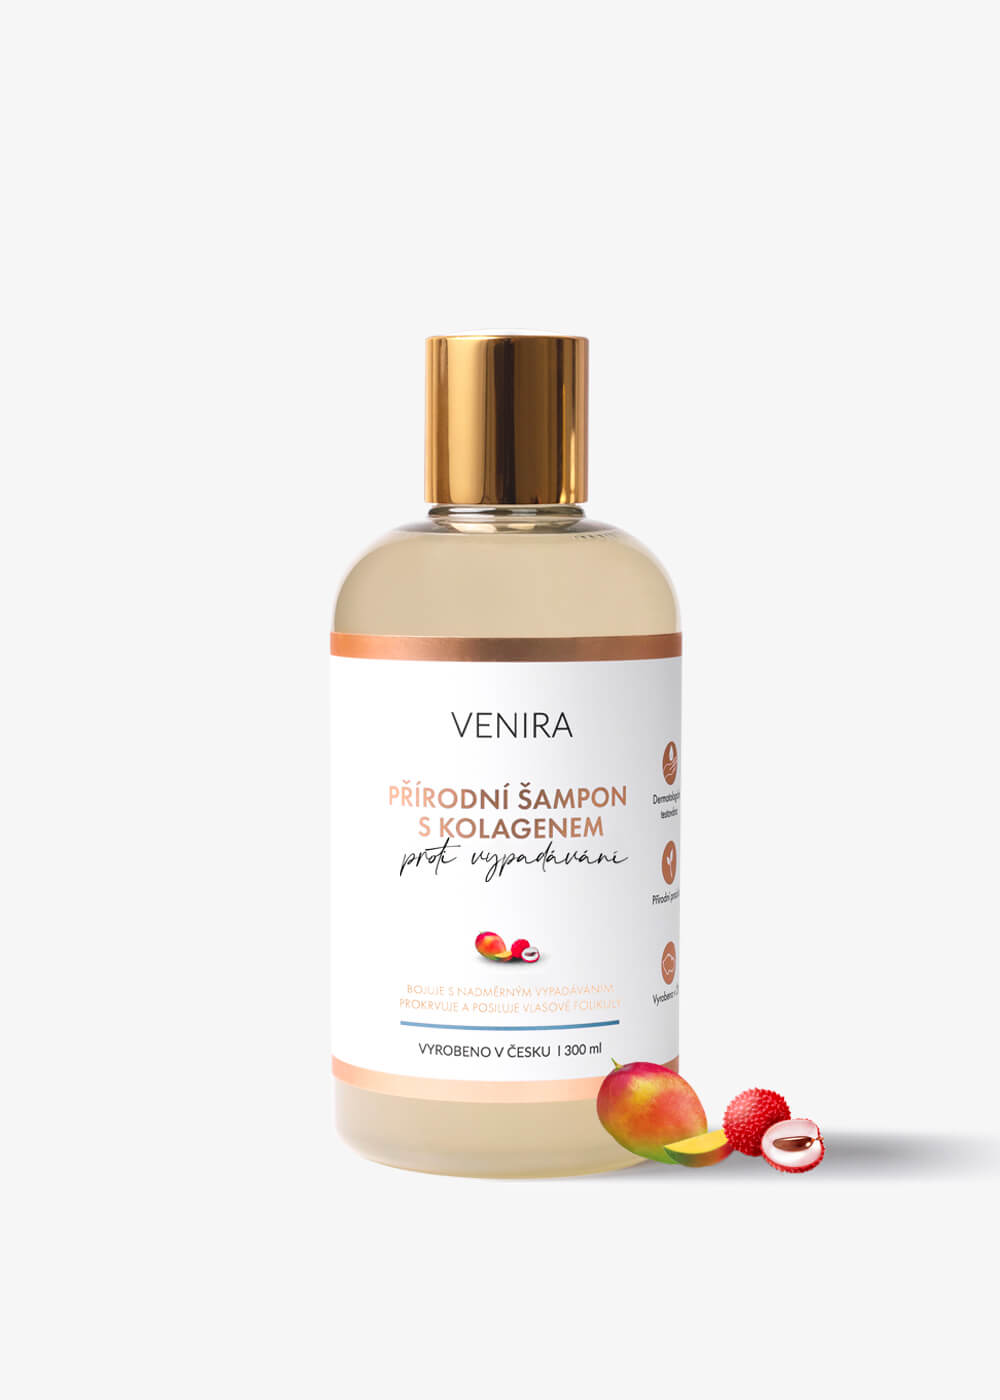 VENIRA prírodný šampón s kolagénom proti vypadávaniu vlasov, mango-liči, 300 ml mango-liči, 300 ml